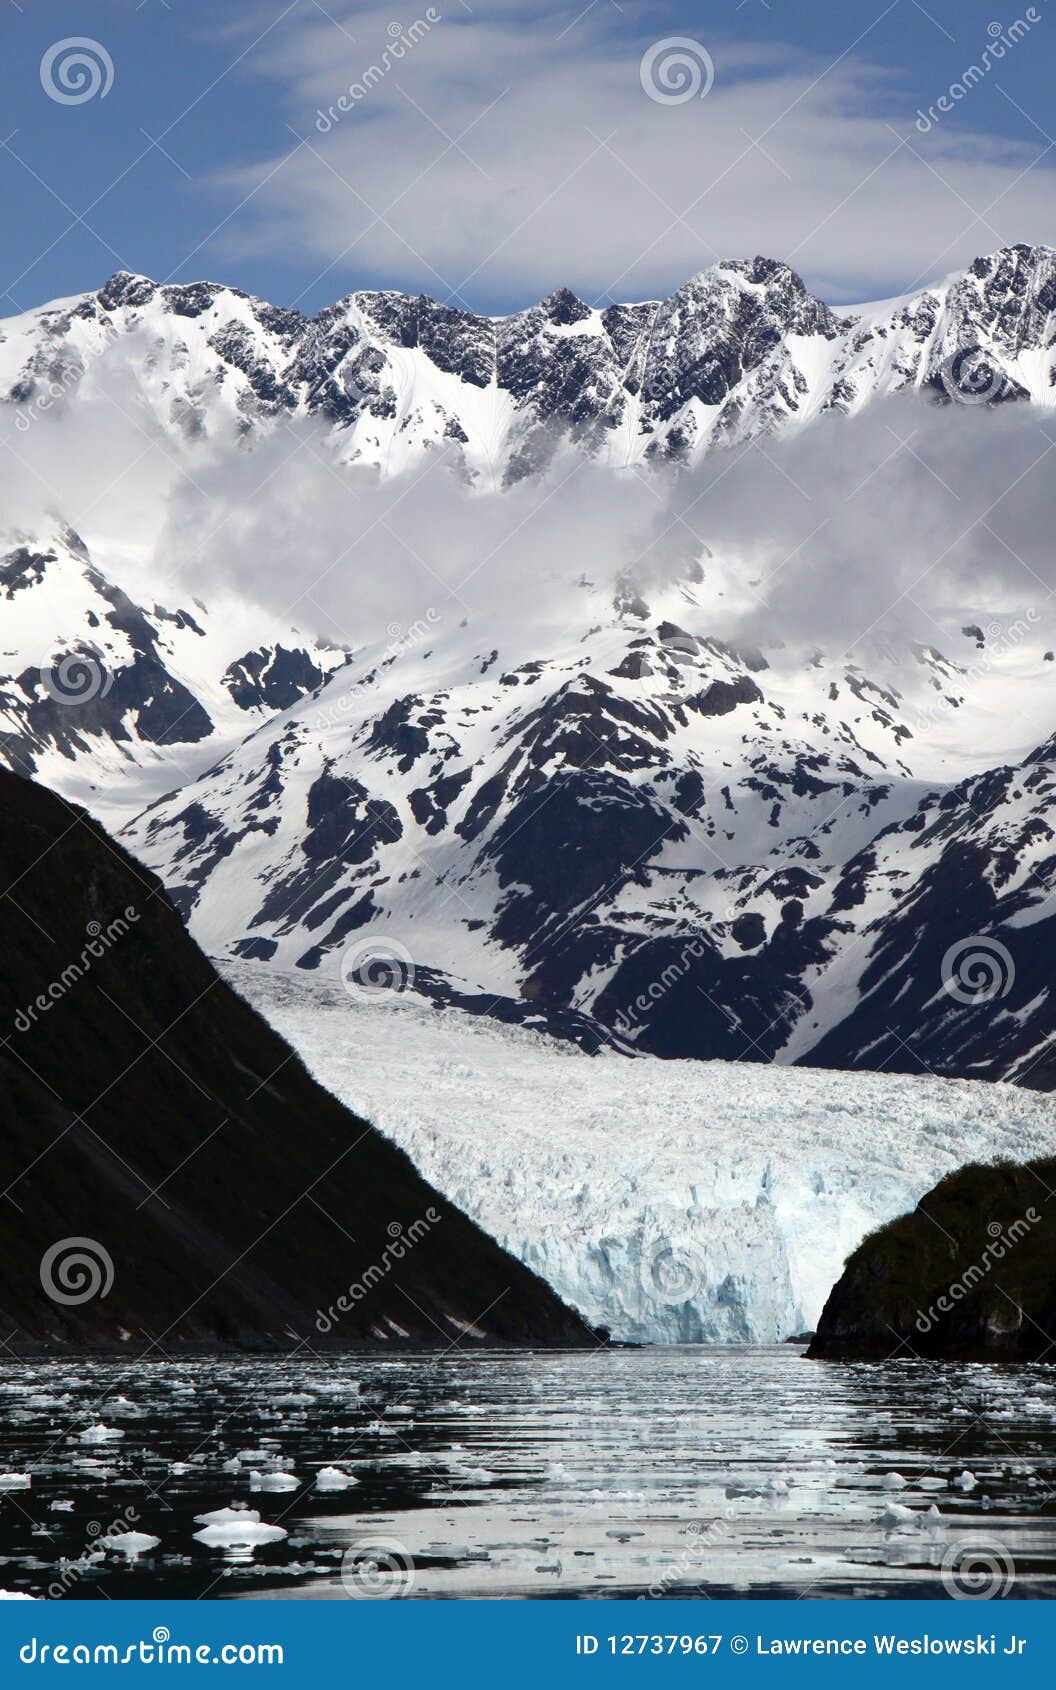 glacier - aialak glacier in kenai fjords